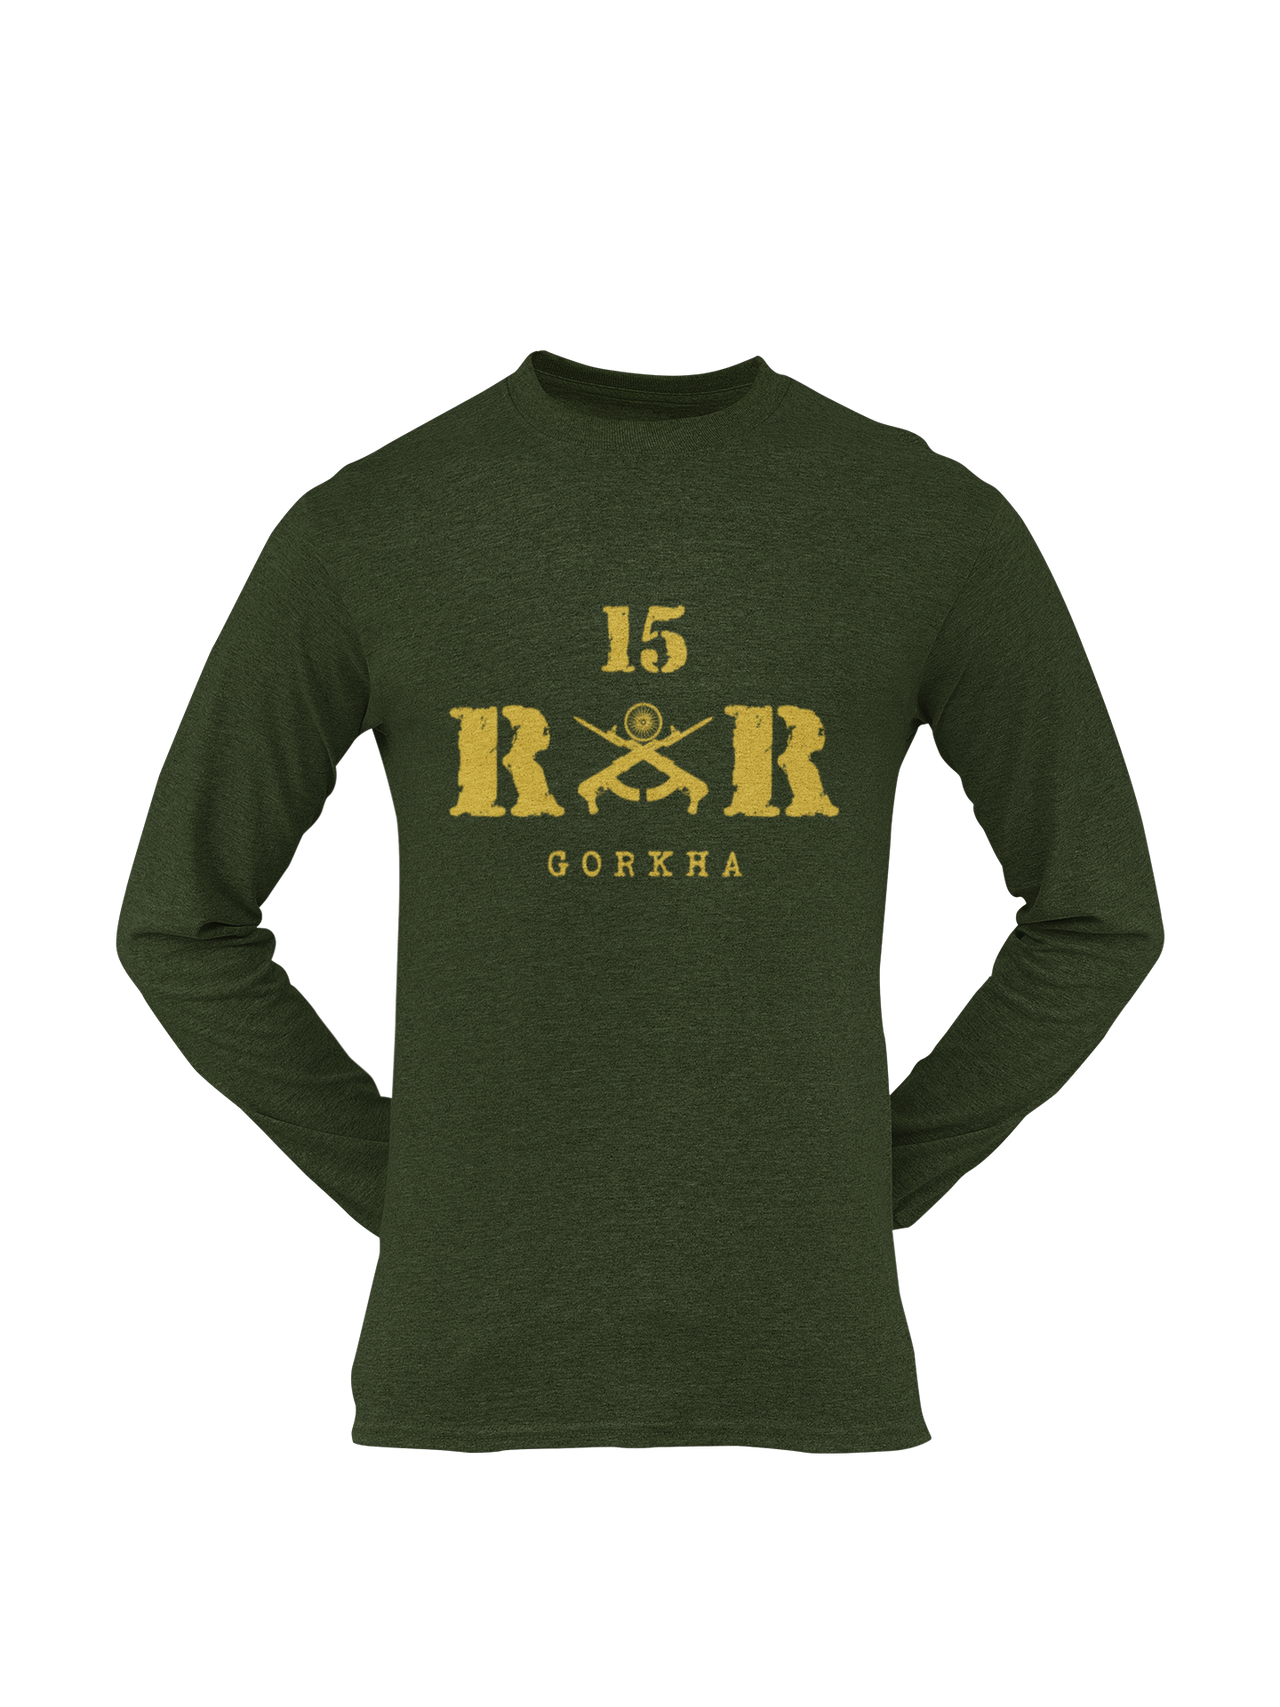 Rashtriya Rifles T-shirt - 15 RR Gorkha (Men)